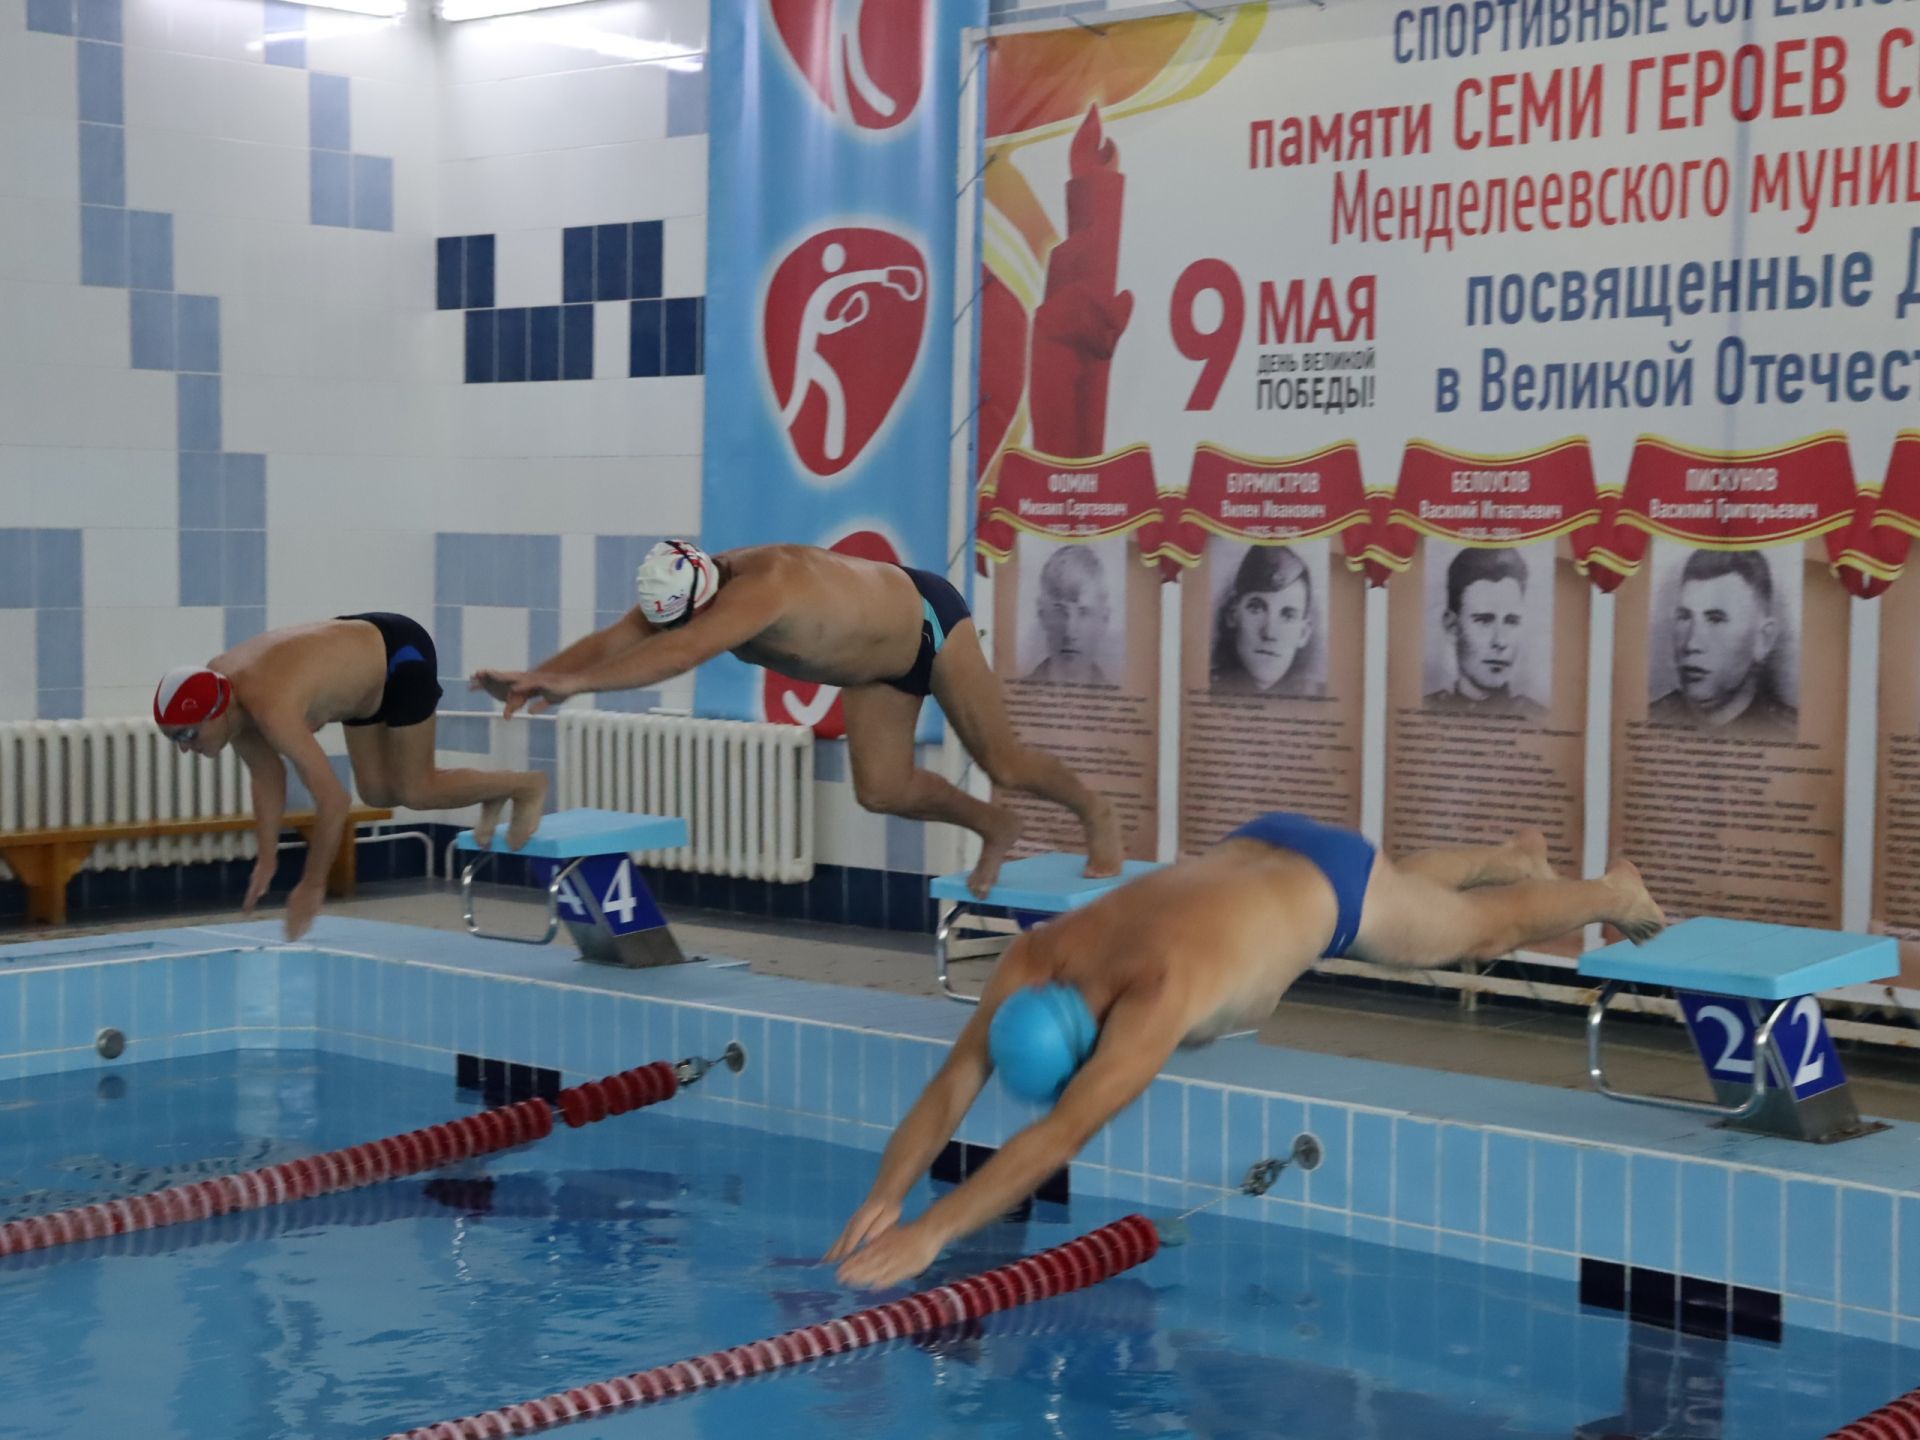 Бодрые и энергичные: представители третьего возраста Менделеевска приняли участие в соревновании по плаванию